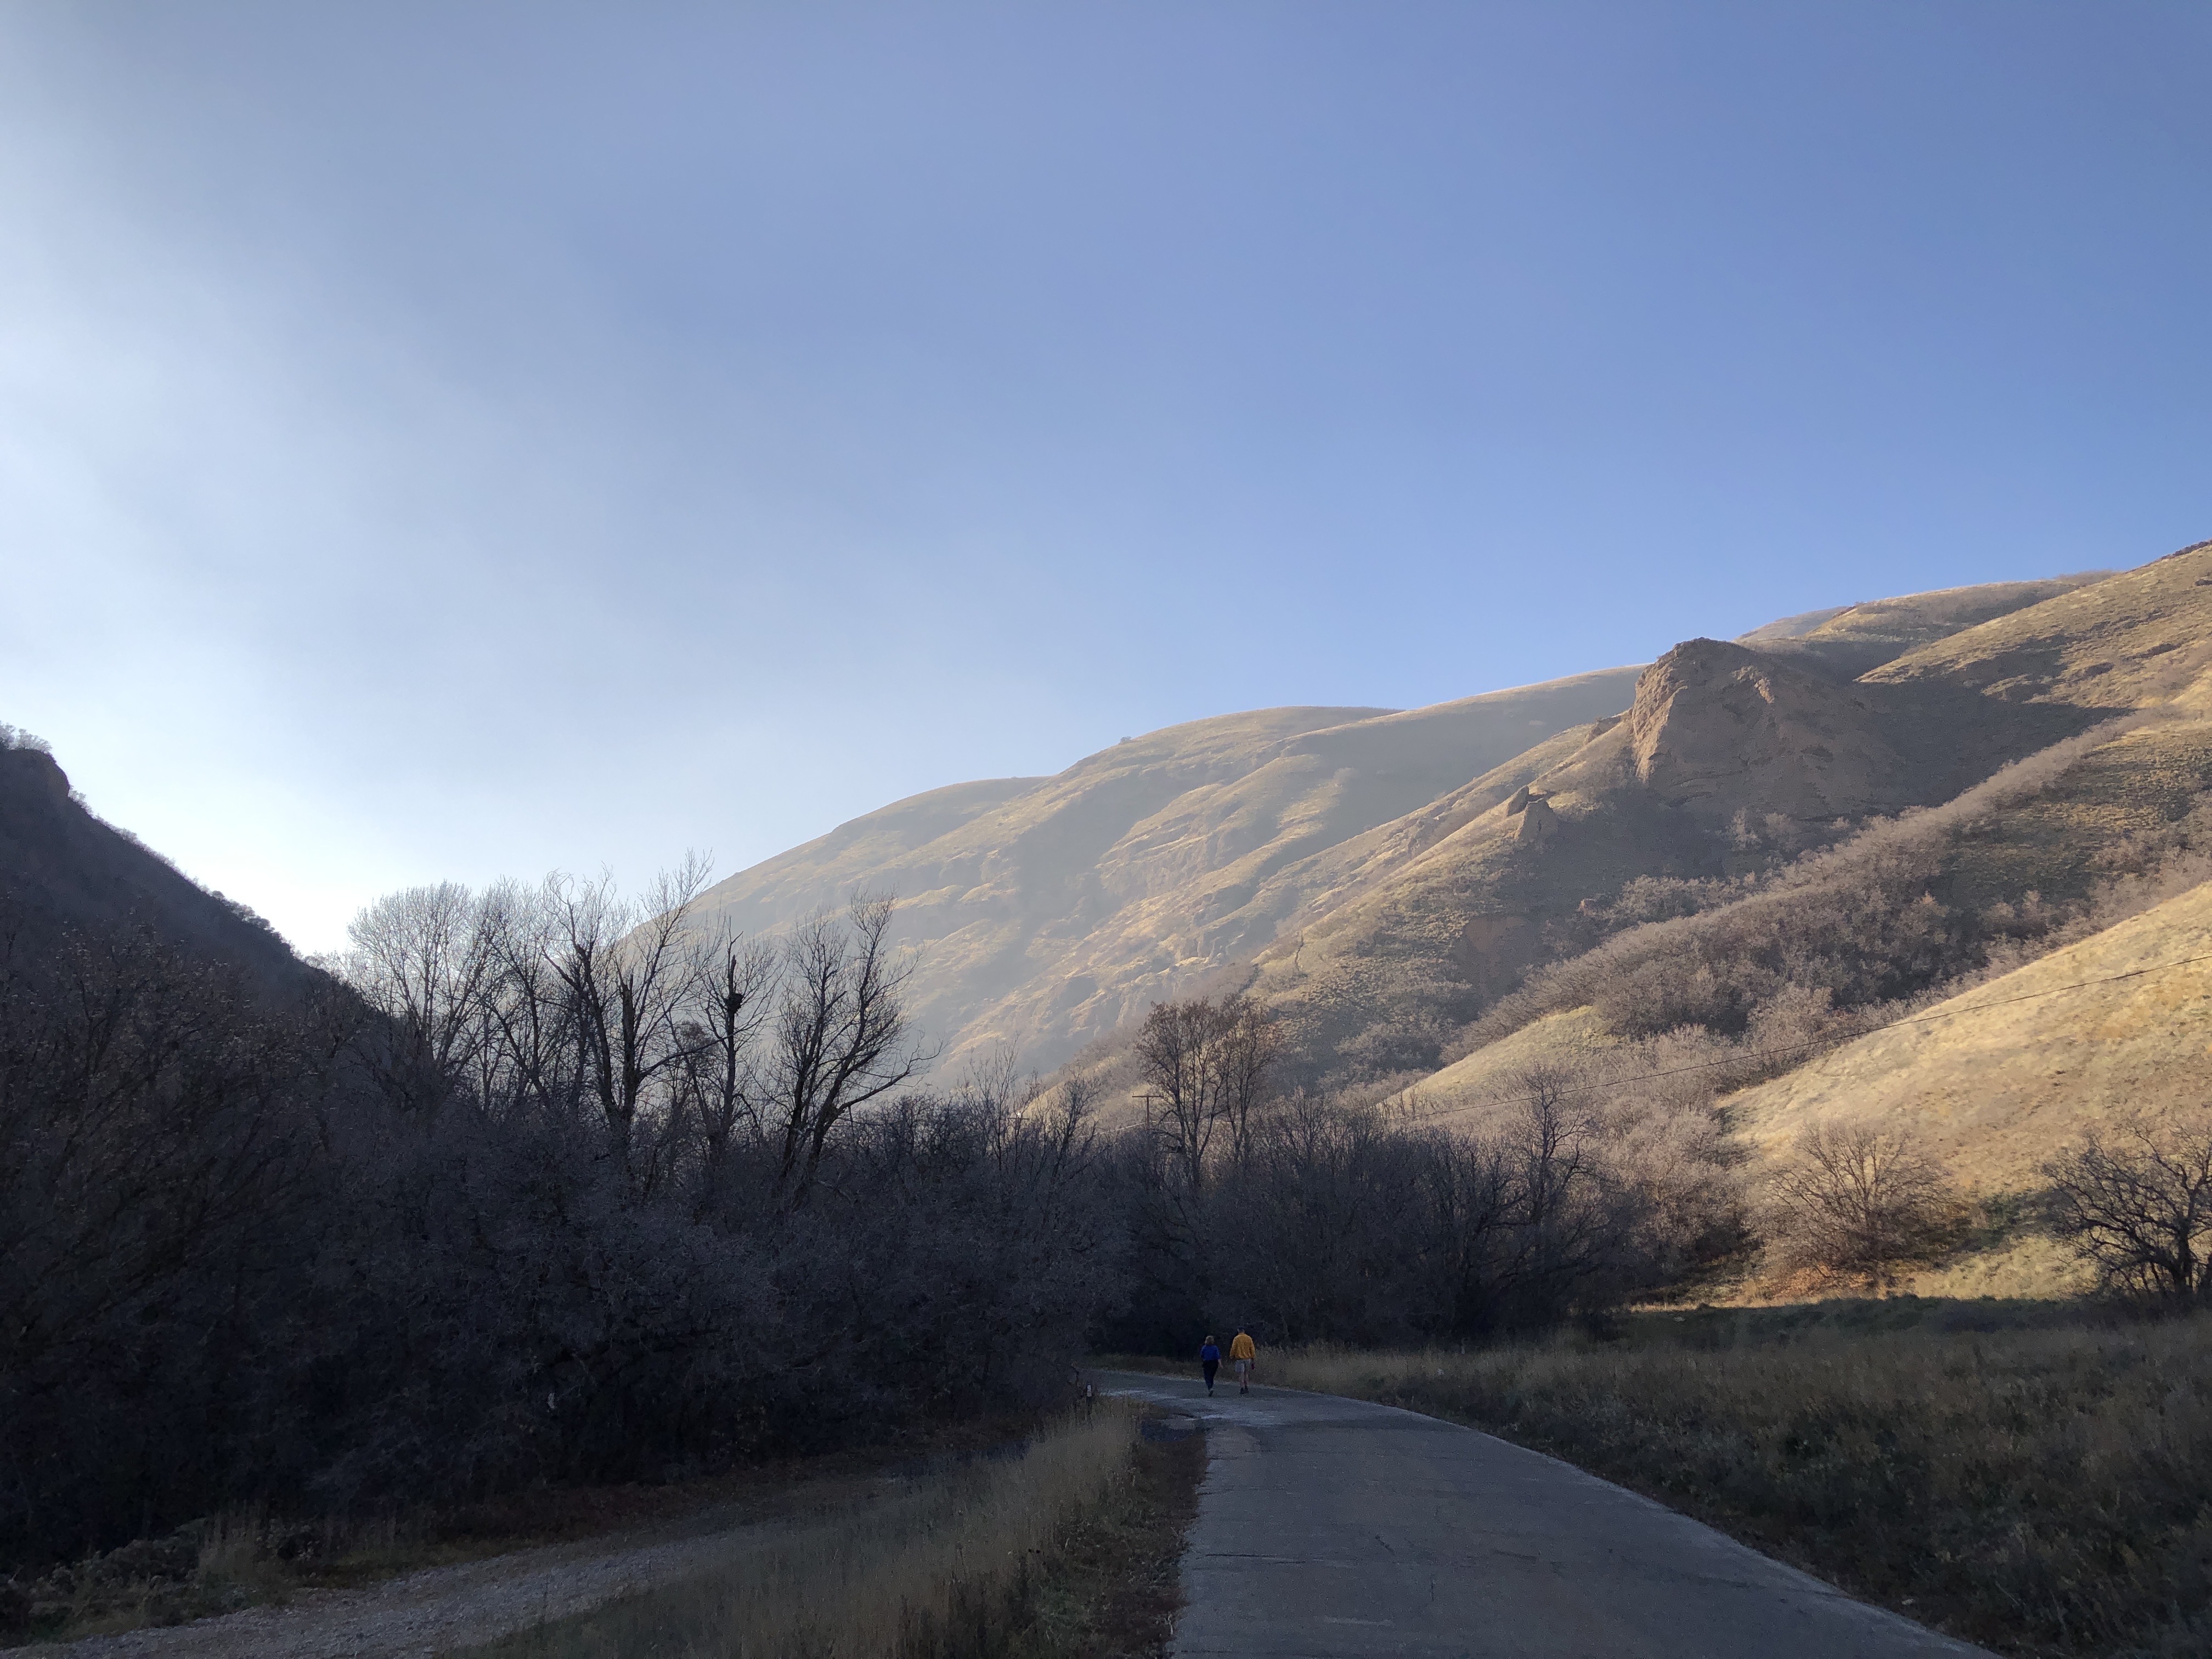 City Creek Canyon Road: 276 Reviews, Map - Utah